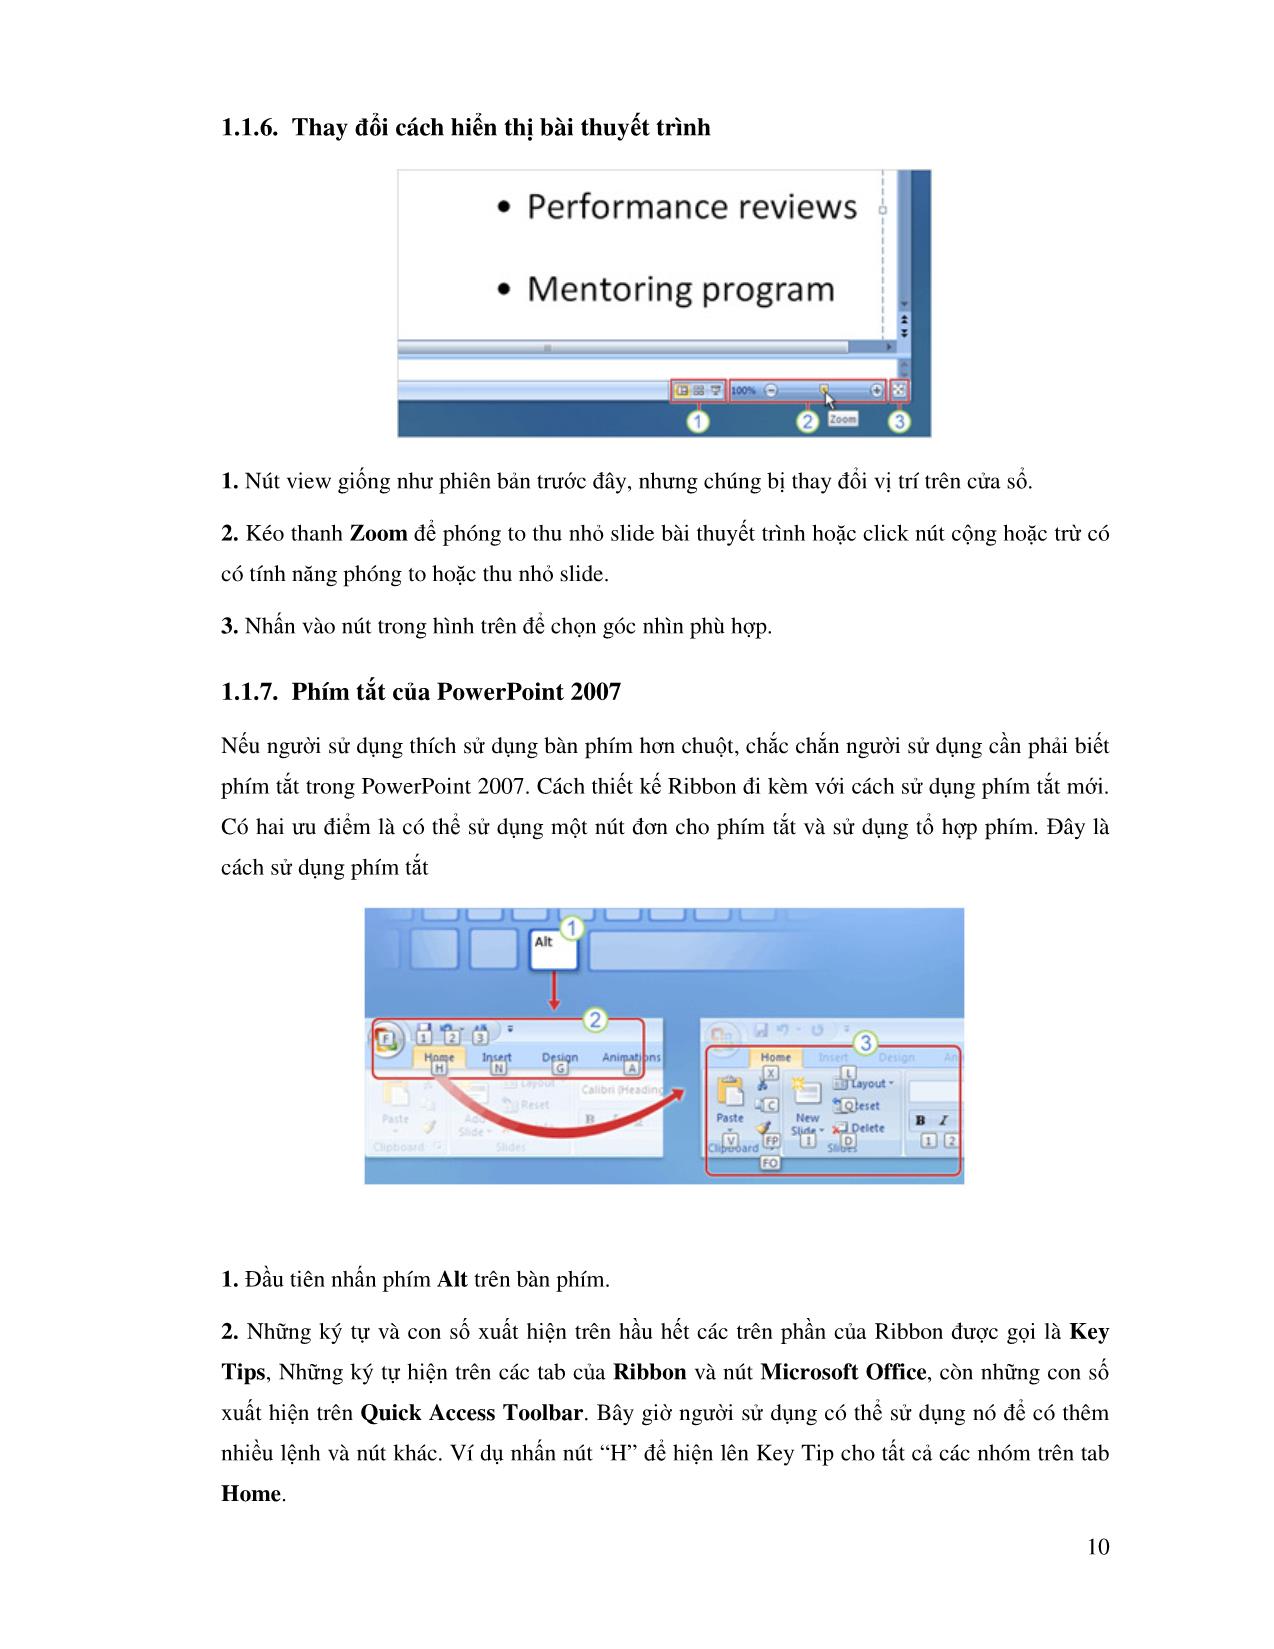 Giáo trình Microsoft Office PowerPoint 2007 trang 10